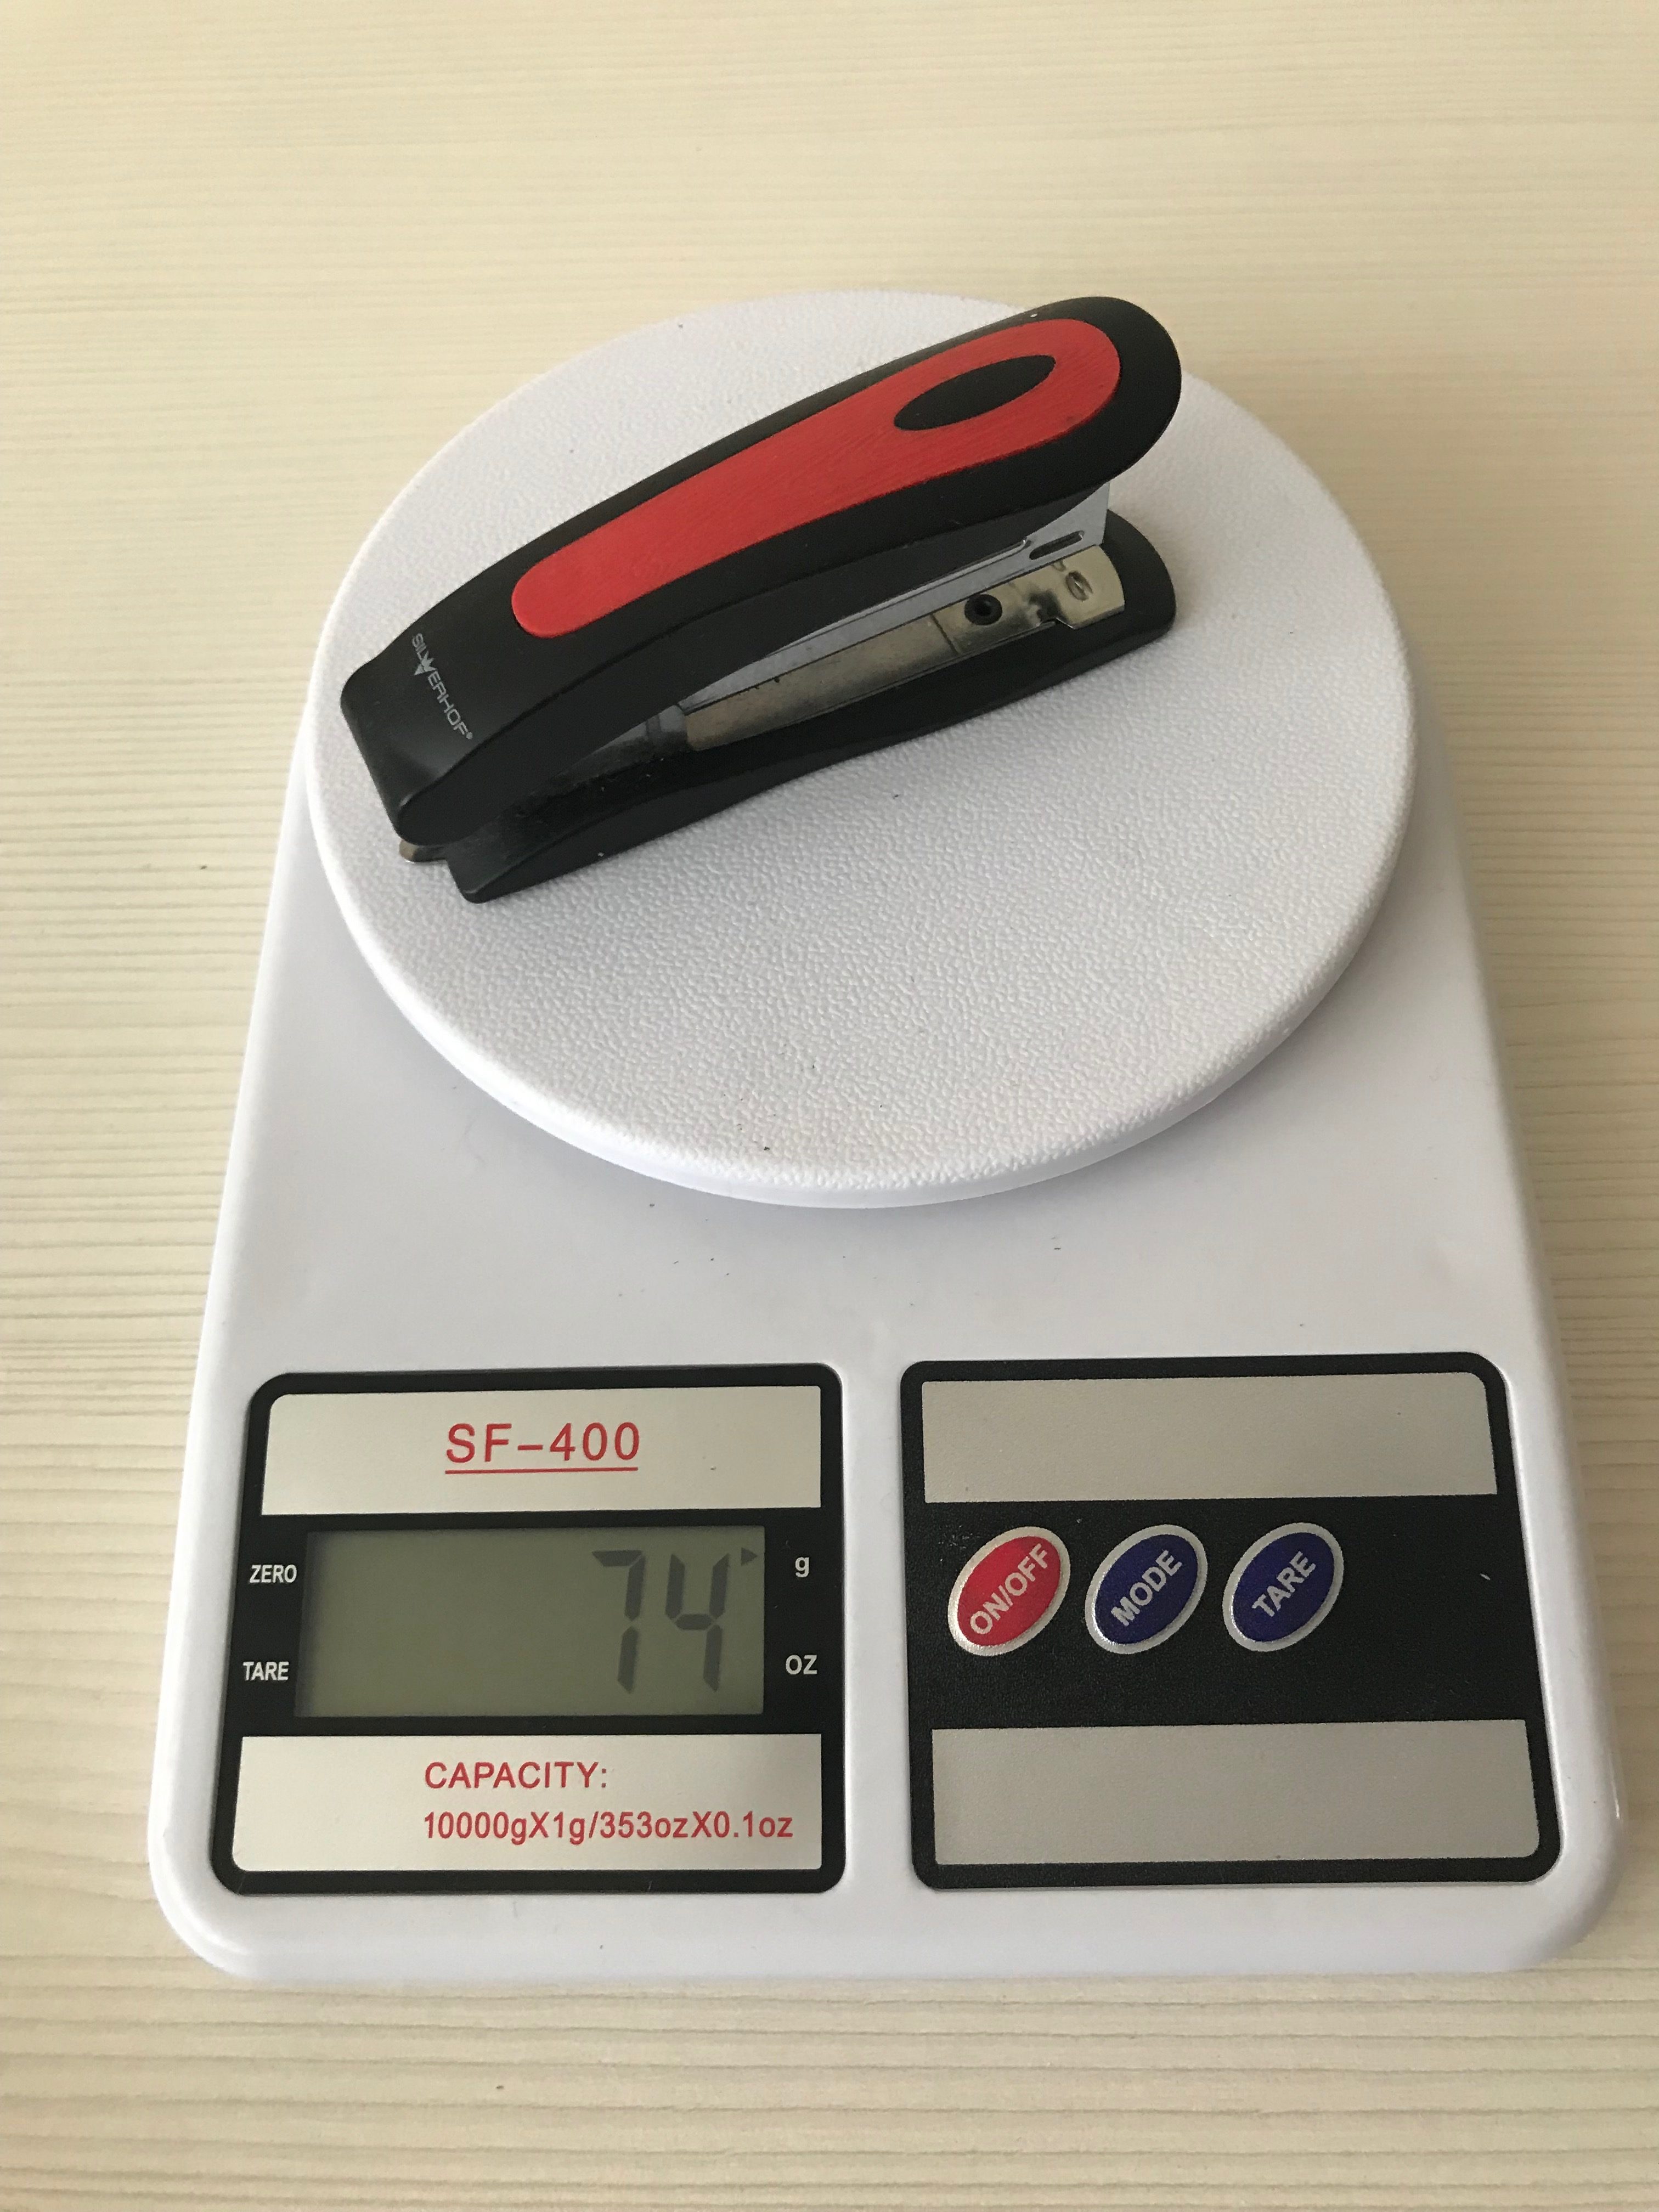 stapler weight